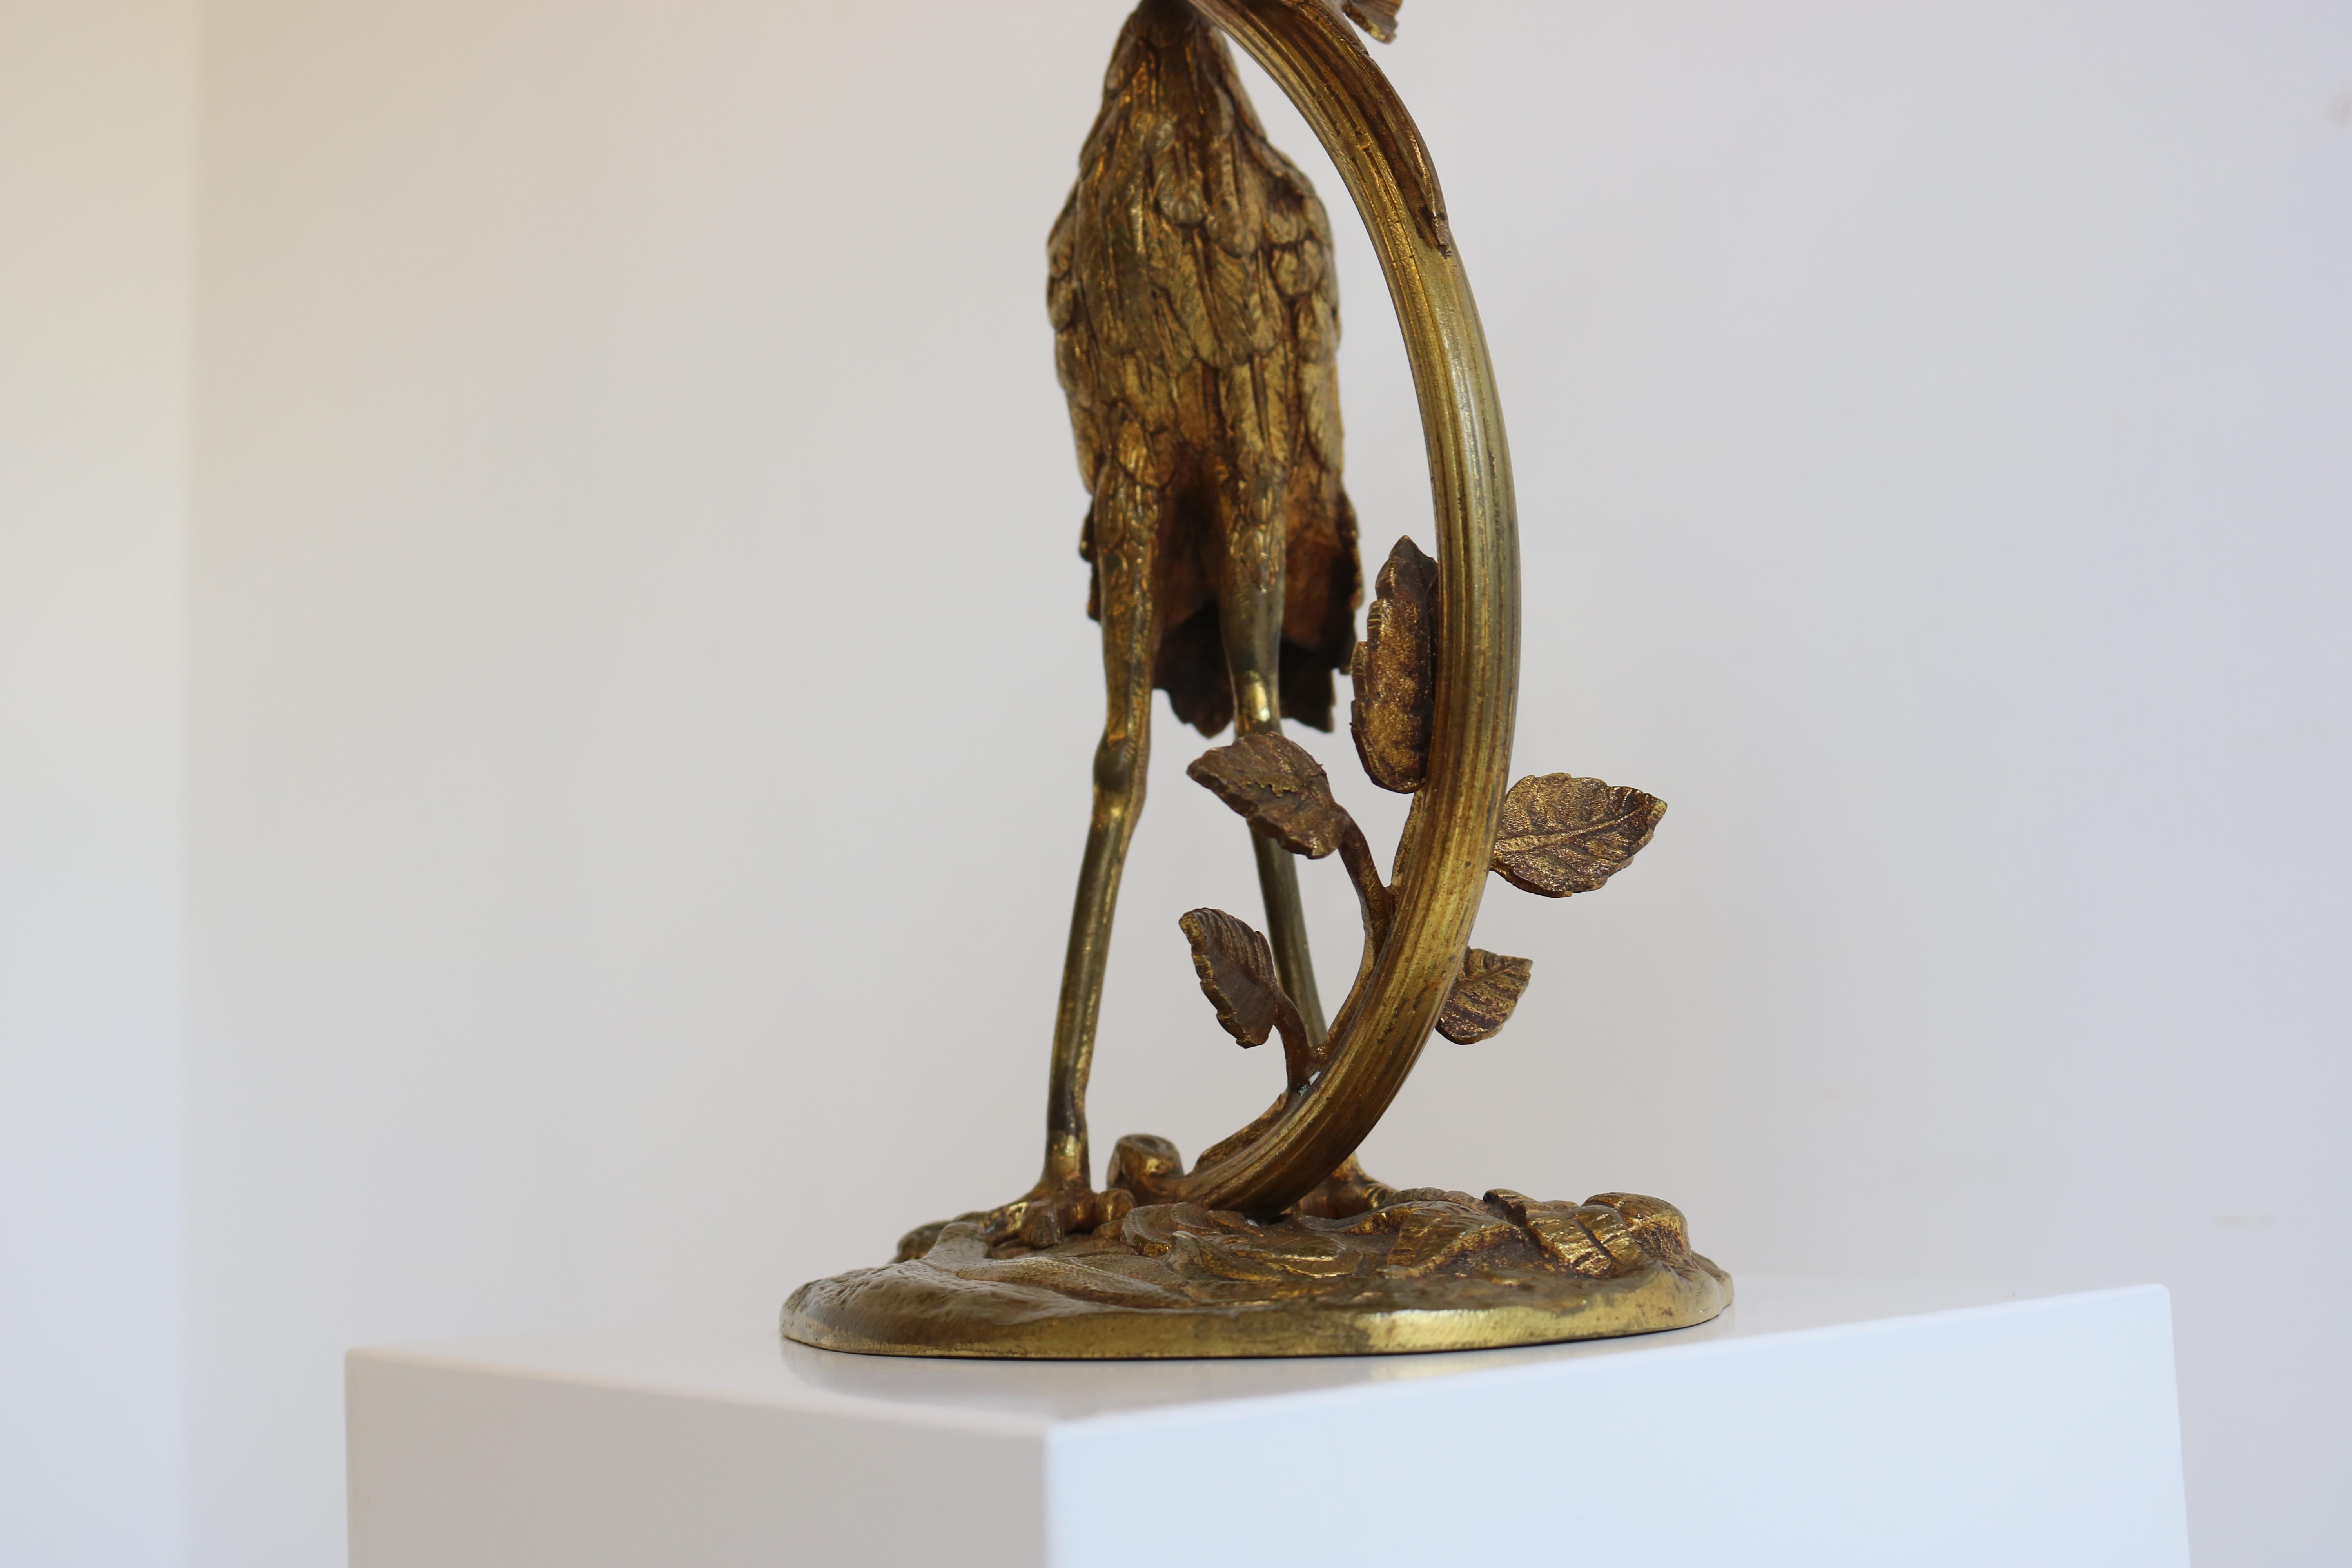 Antique French Art Nouveau Table Lamp Heron by Degue 1920 Pate De Verre Bronze  For Sale 8